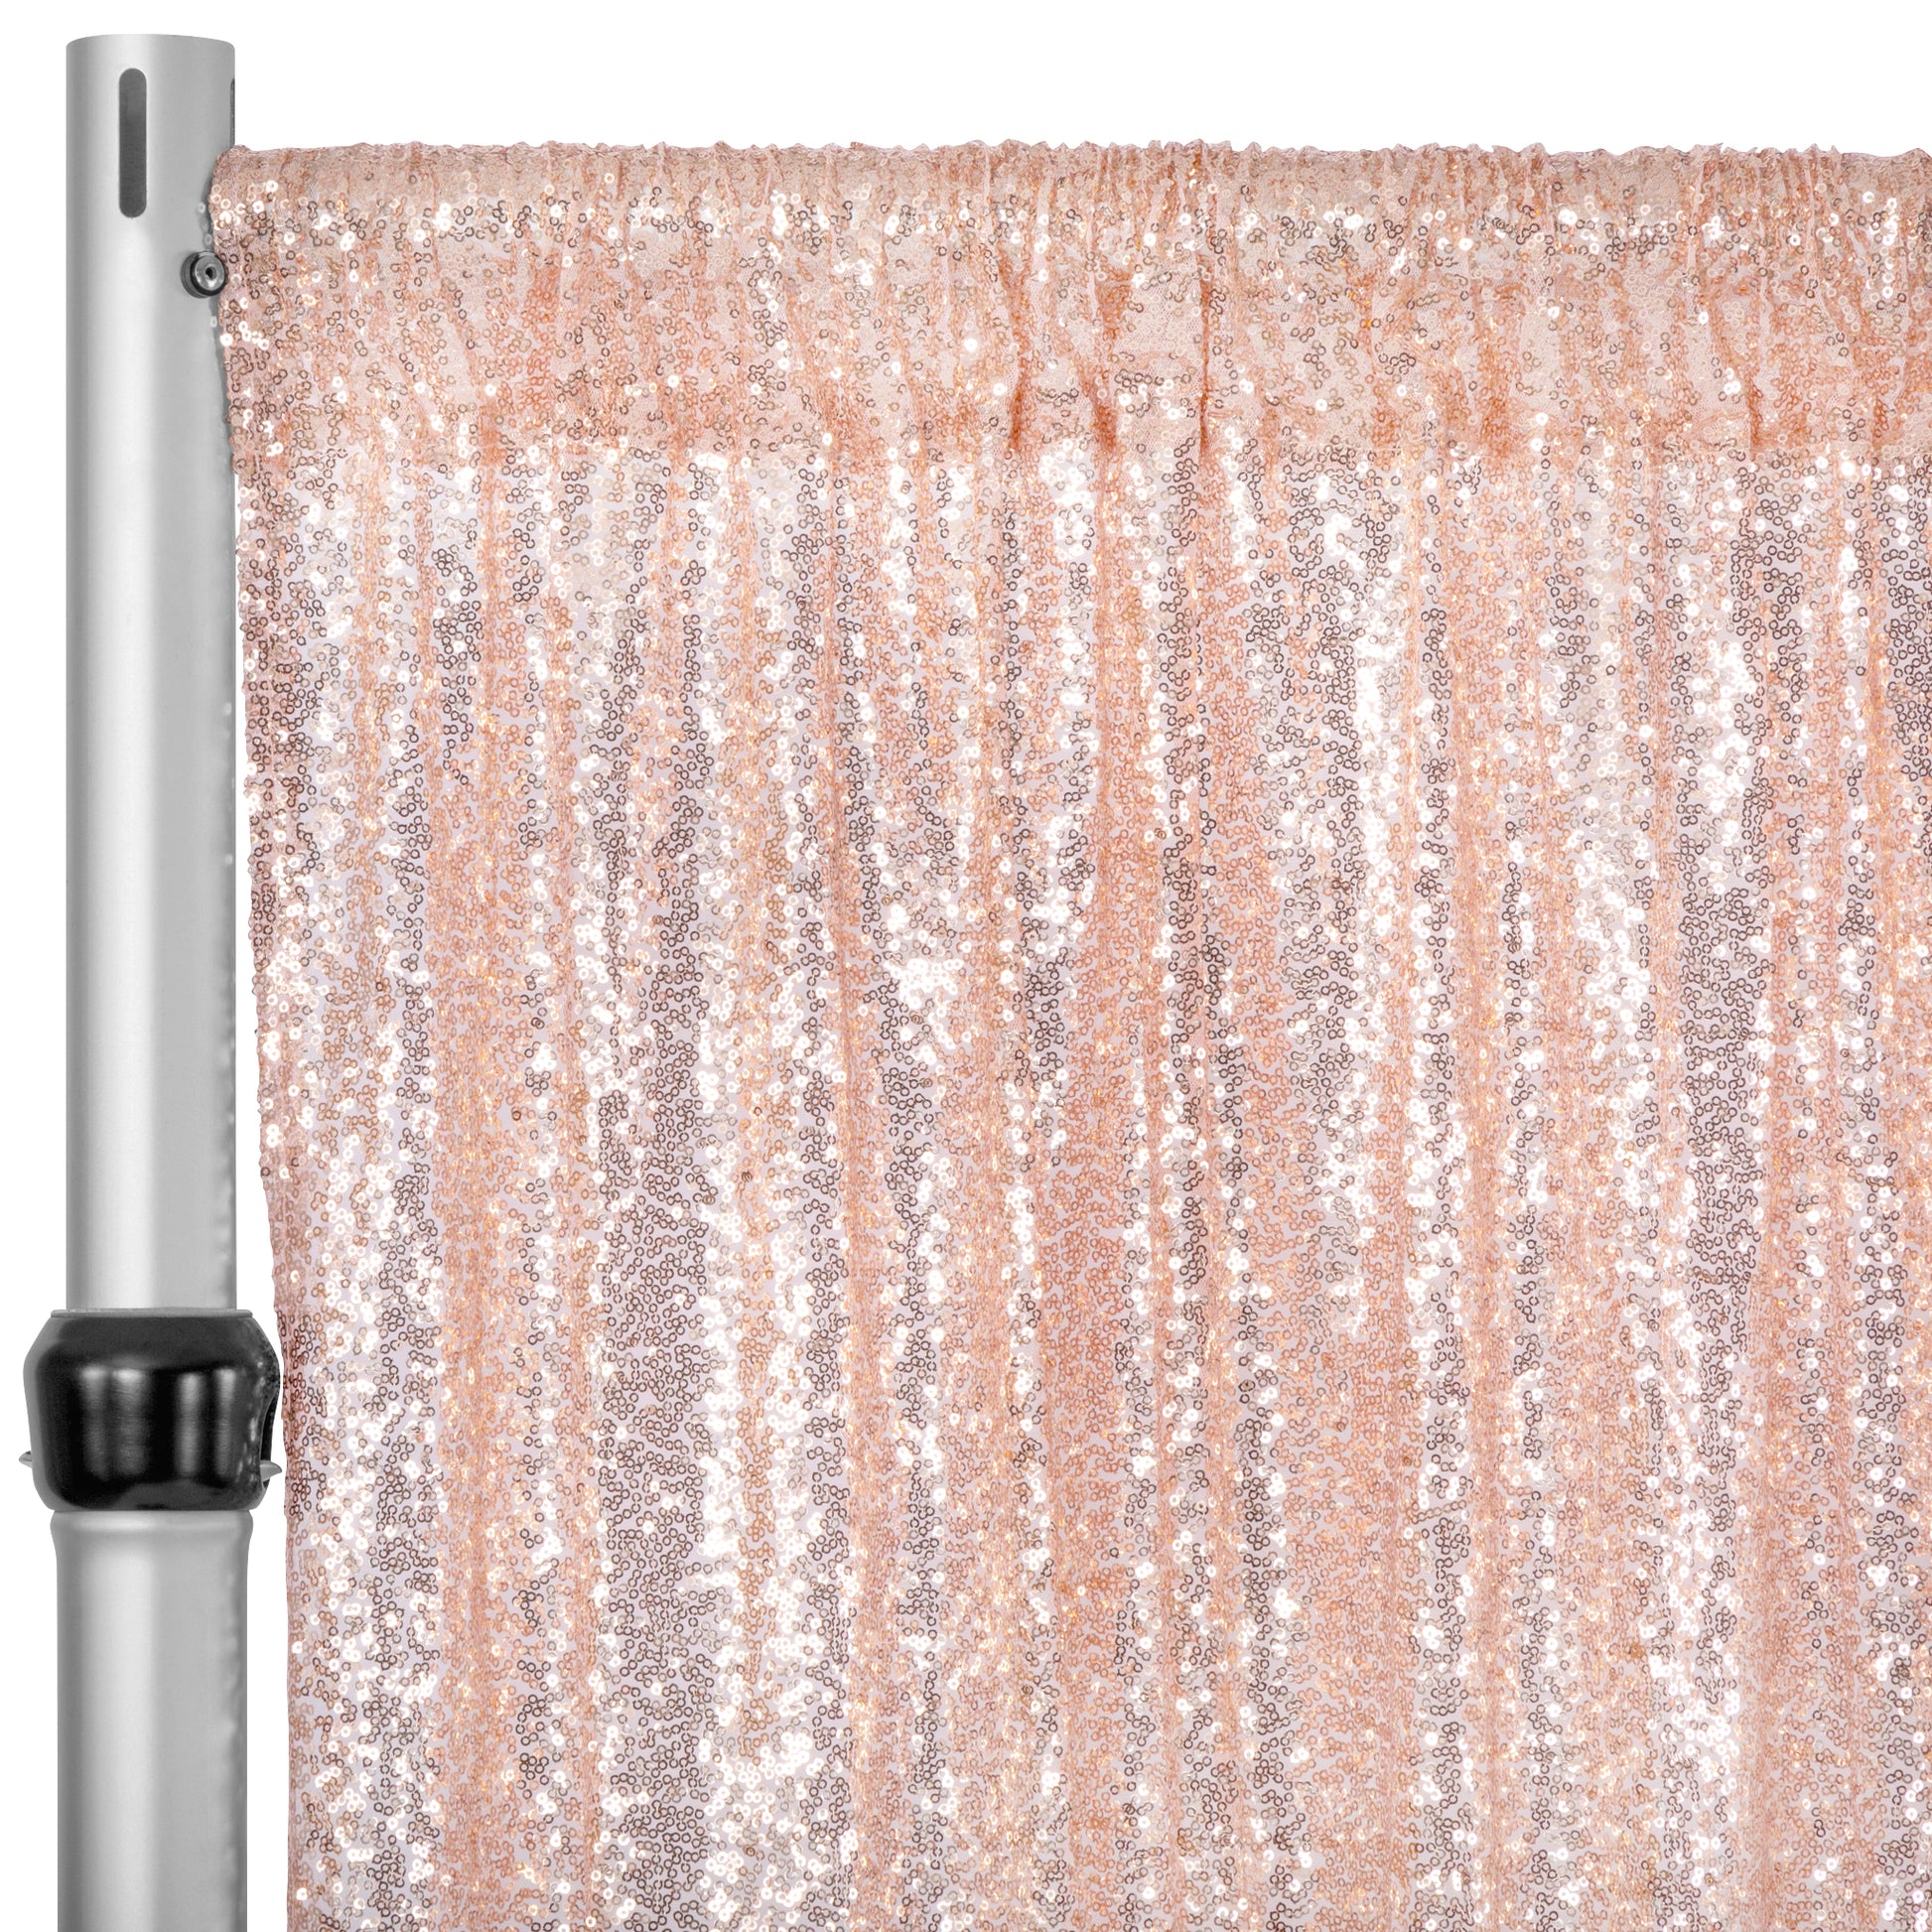 Glitz Sequin Mesh Net 14ft H x 52" W Drape/Backdrop panel - Blush/Rose Gold